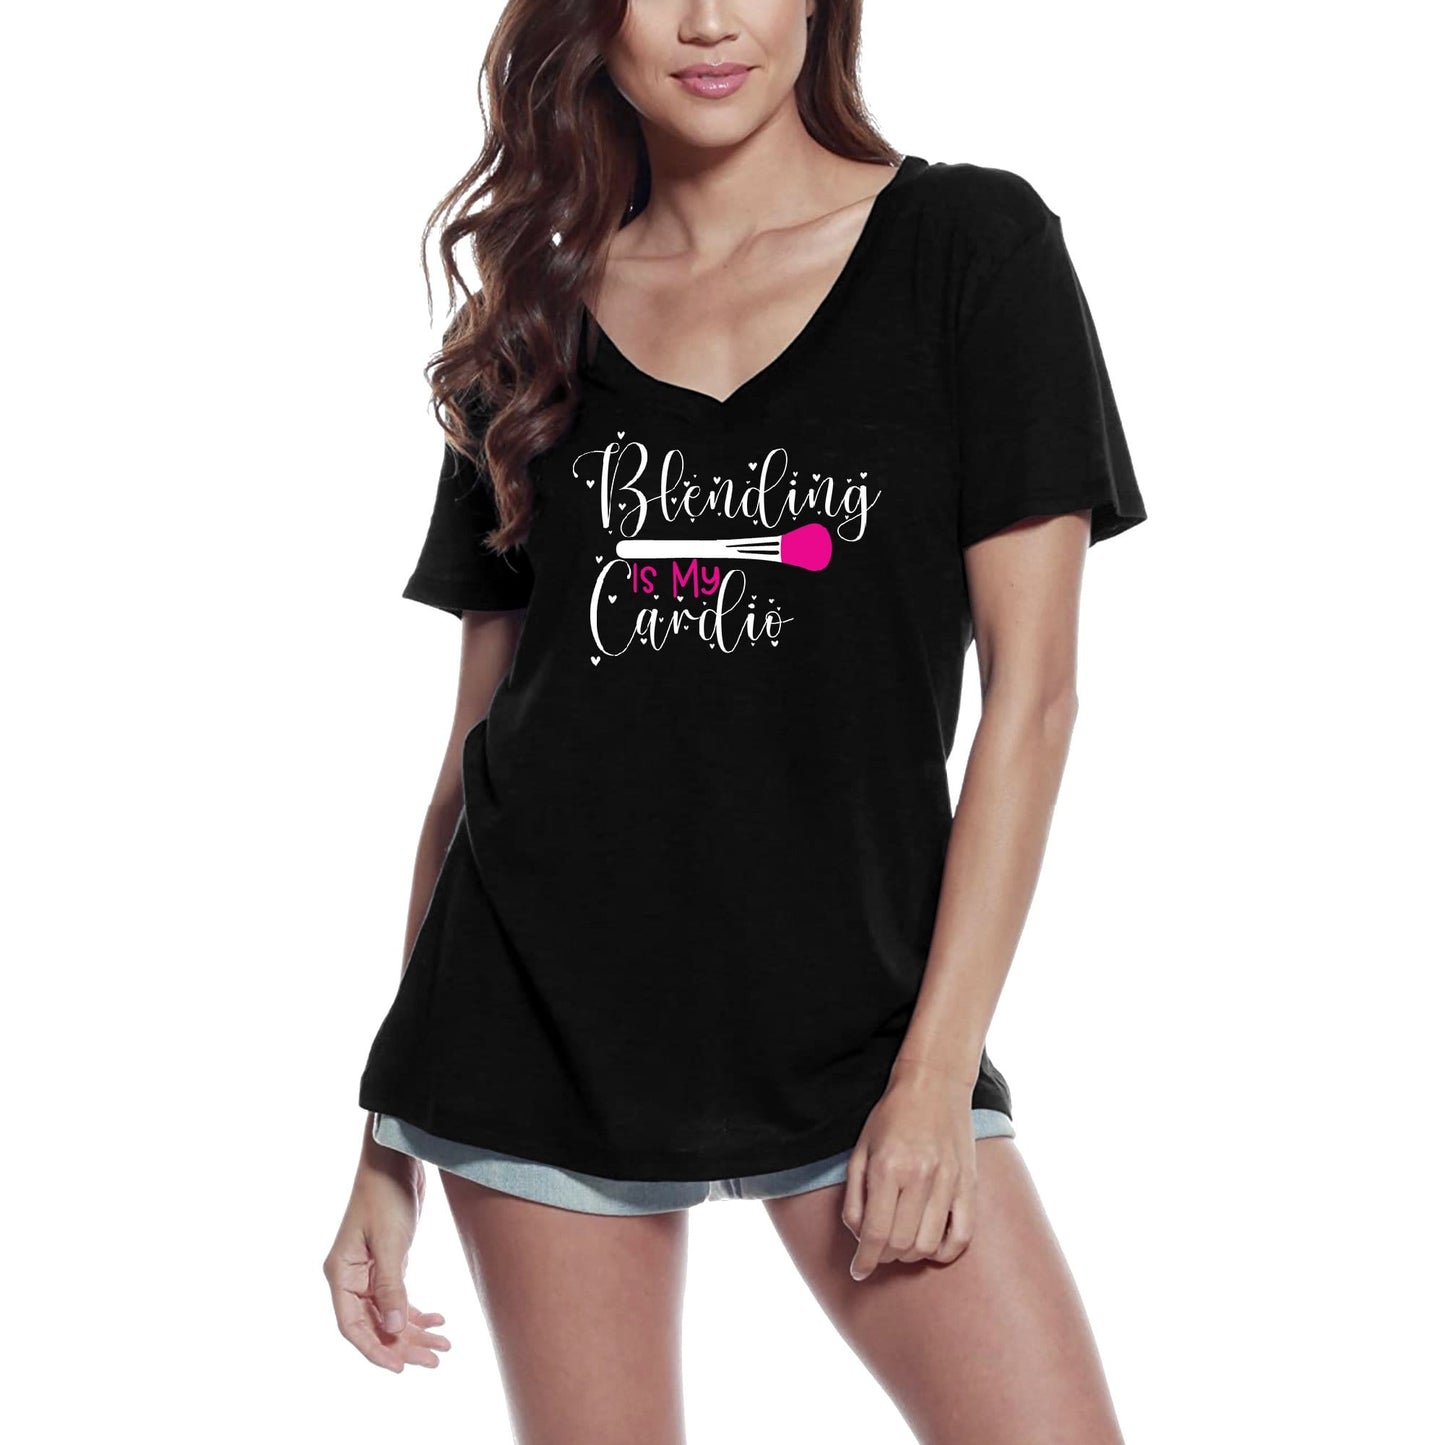 ULTRABASIC Women's Novelty T-Shirt Blending Is My Cardio - Make Up Tee Shirt